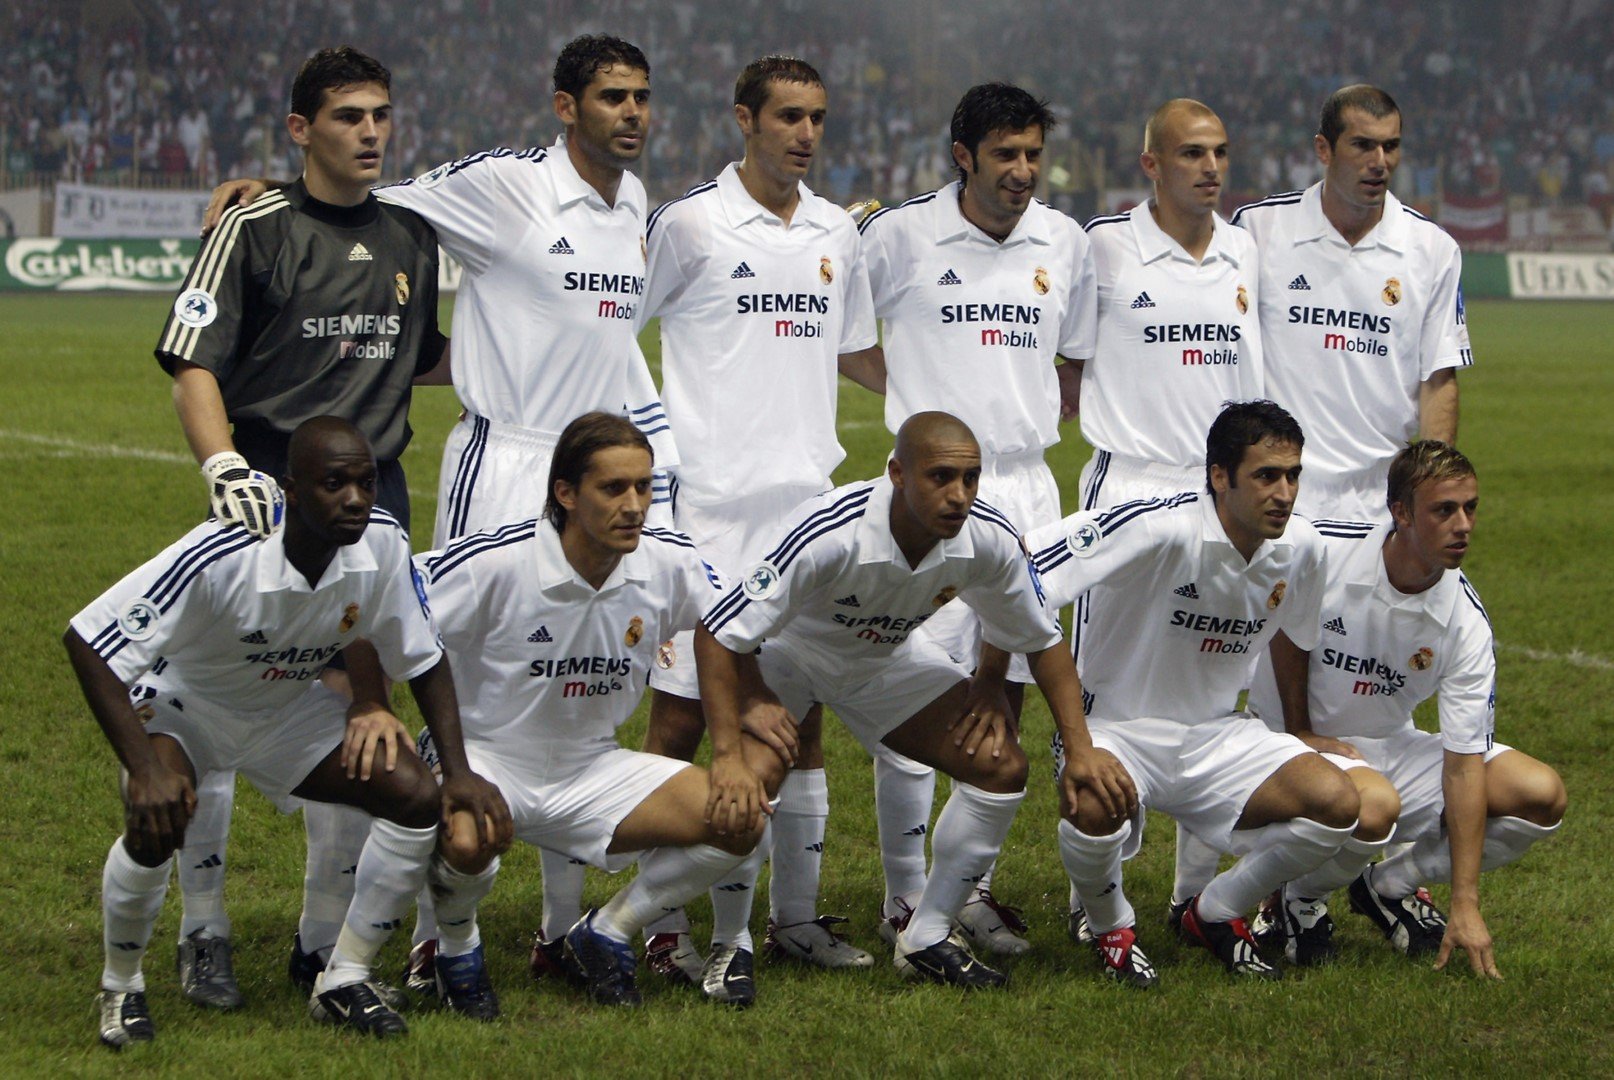 Реал през 2002-ра - Галактикос, но с петима испанци сред тях почти винаги в стартовия състав. Или дори шестима - като на тази снимка: Касияс, Йеро, Елгера, Салгадо, Раул, Гути.